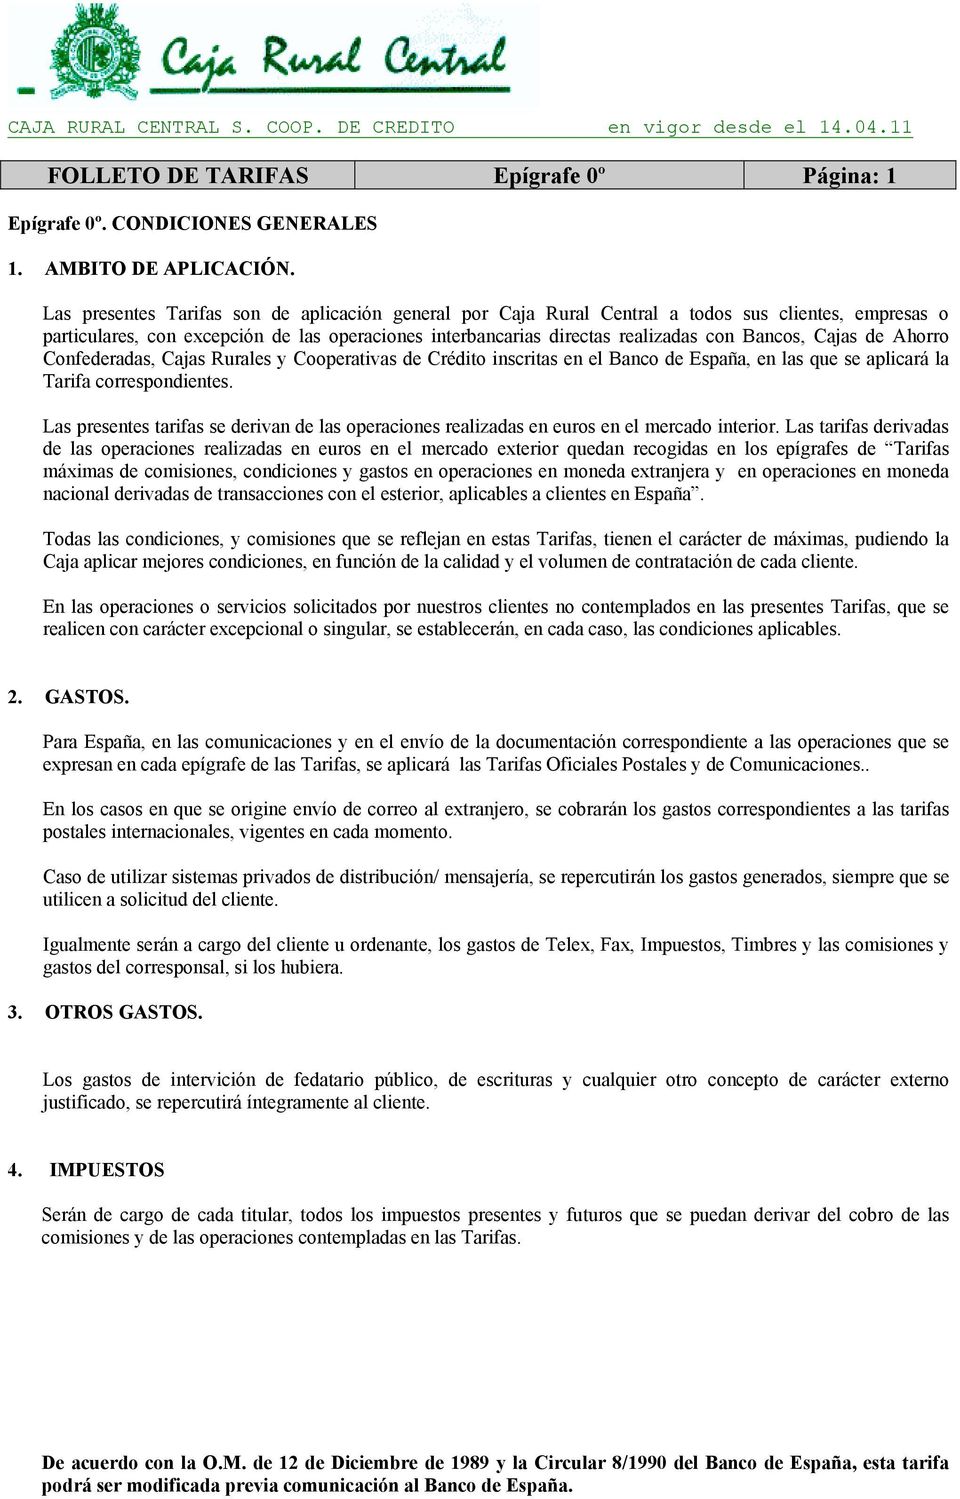 Cajas de Ahorro Confederadas, Cajas Rurales y Cooperativas de Crédito inscritas en el Banco de España, en las que se aplicará la Tarifa correspondientes.